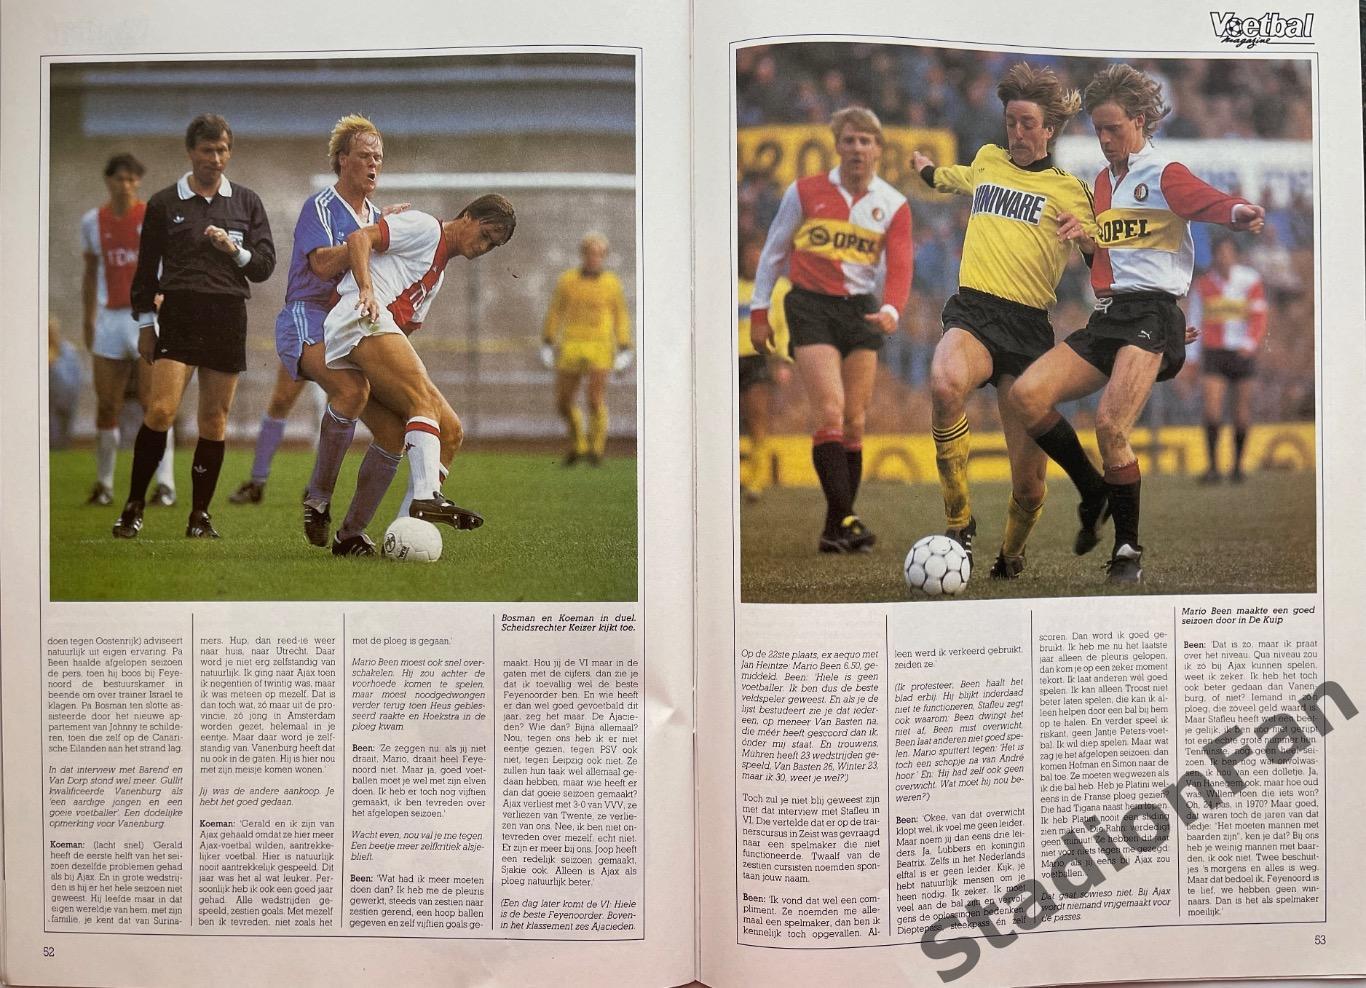 Журнал Voetbal - 1985 год. 6